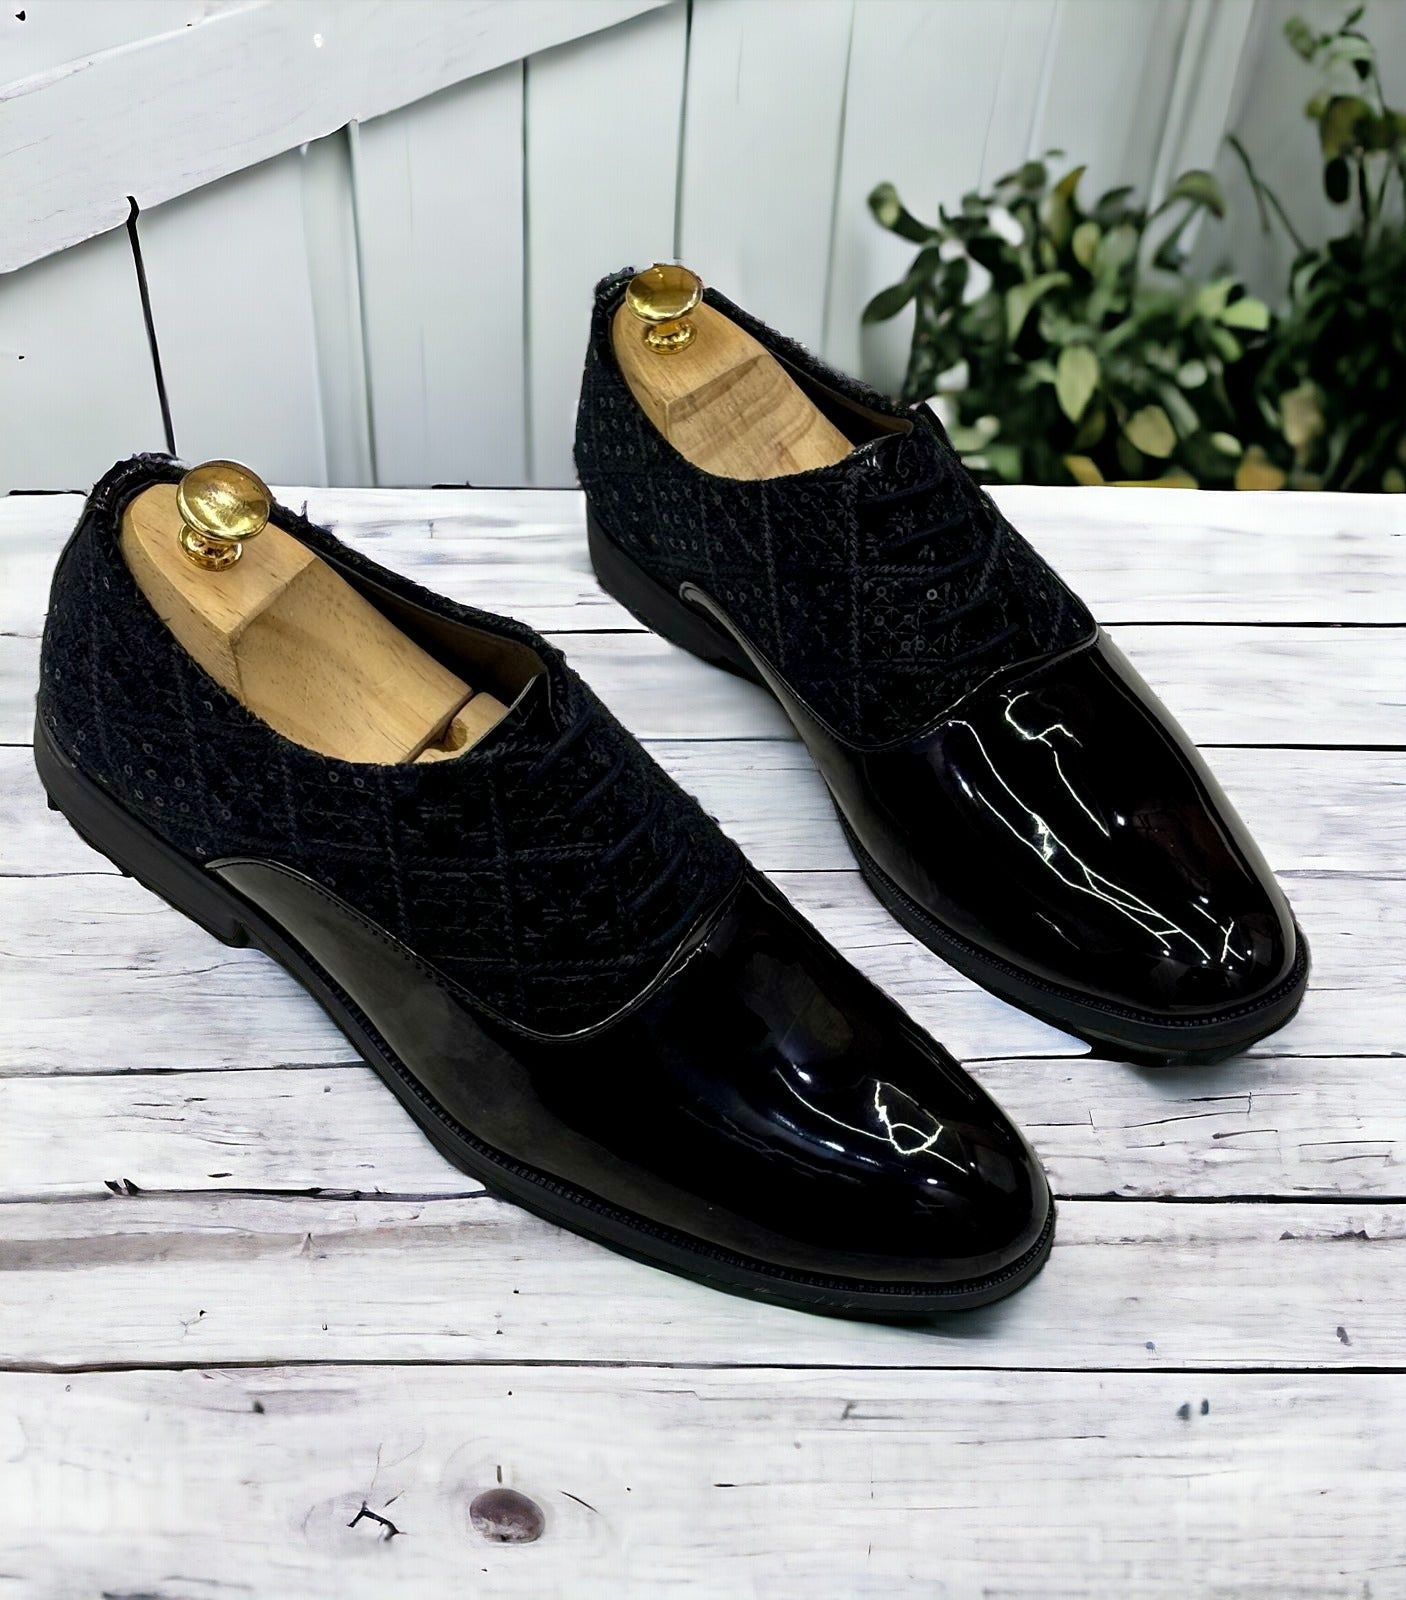 Jack Marc Fashion Shiny Shimmer Lace-Up Black Dress Shoes for Men - JACKMARC.COM